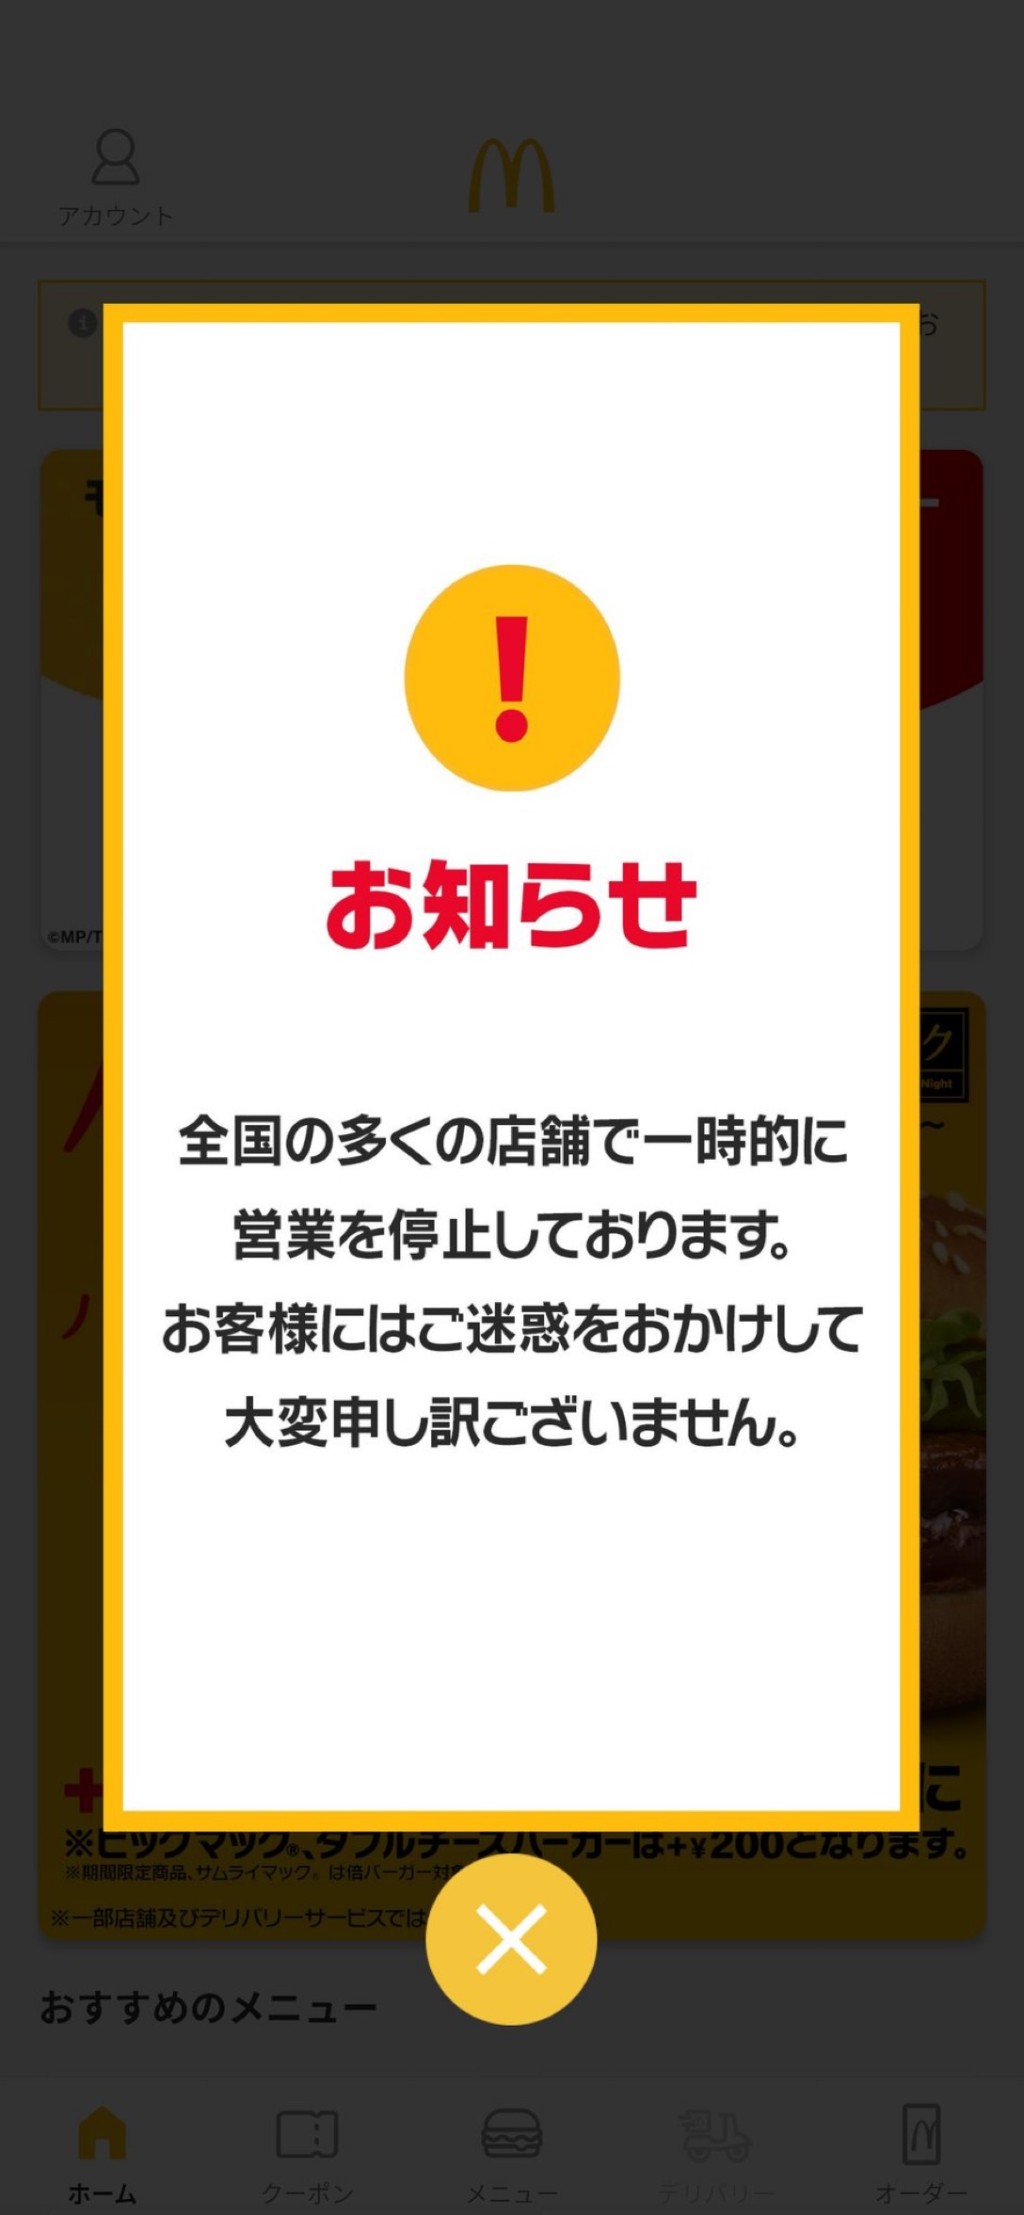 网民展示日本麦当劳手机程式的大字故障告示。 